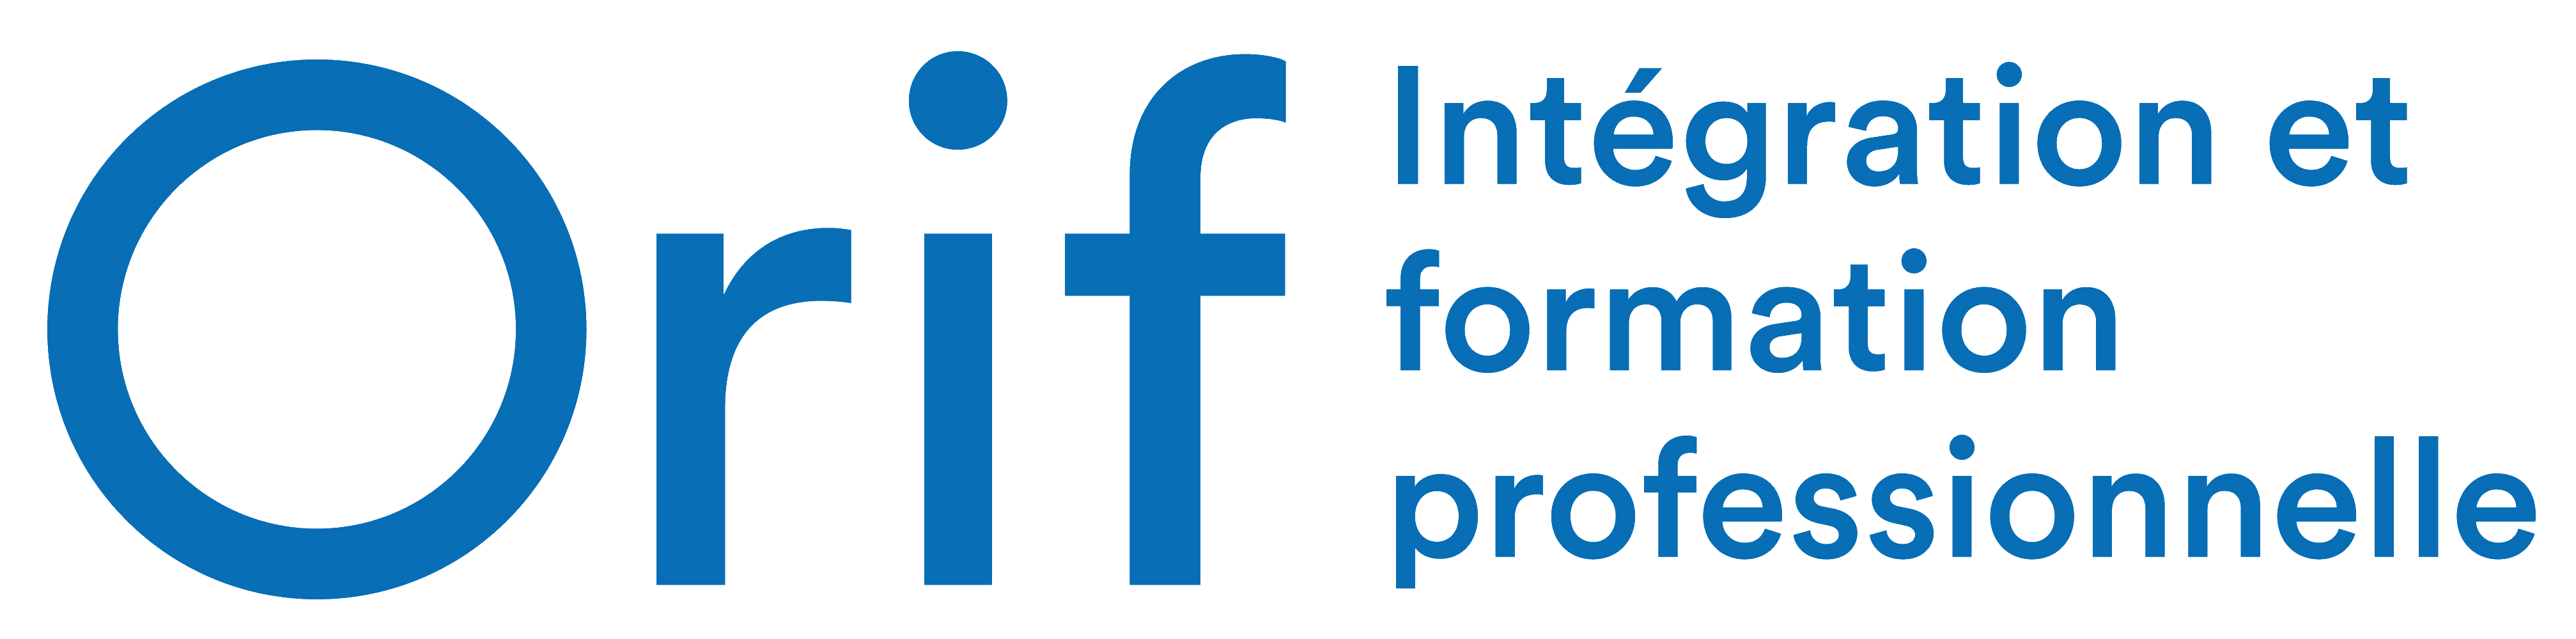 Logo de l'Orif, Intégration et formation professionnelle